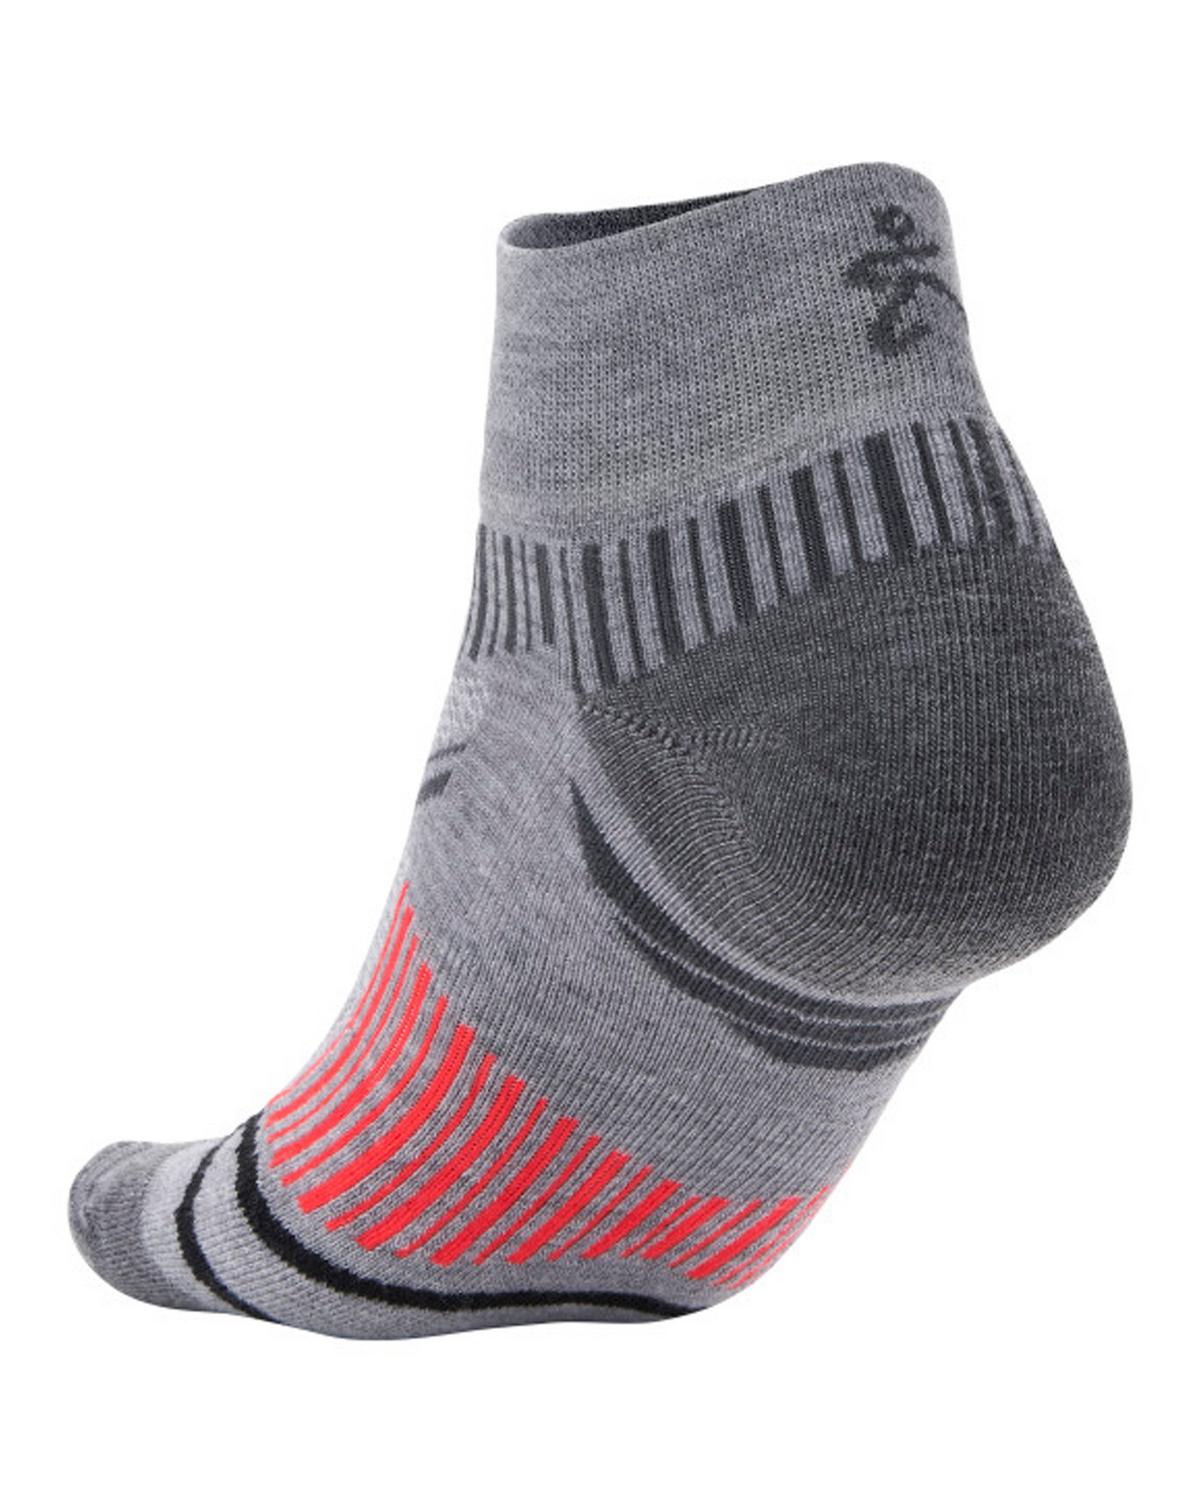 Balega Enduro Quarter Running Socks  -  Grey